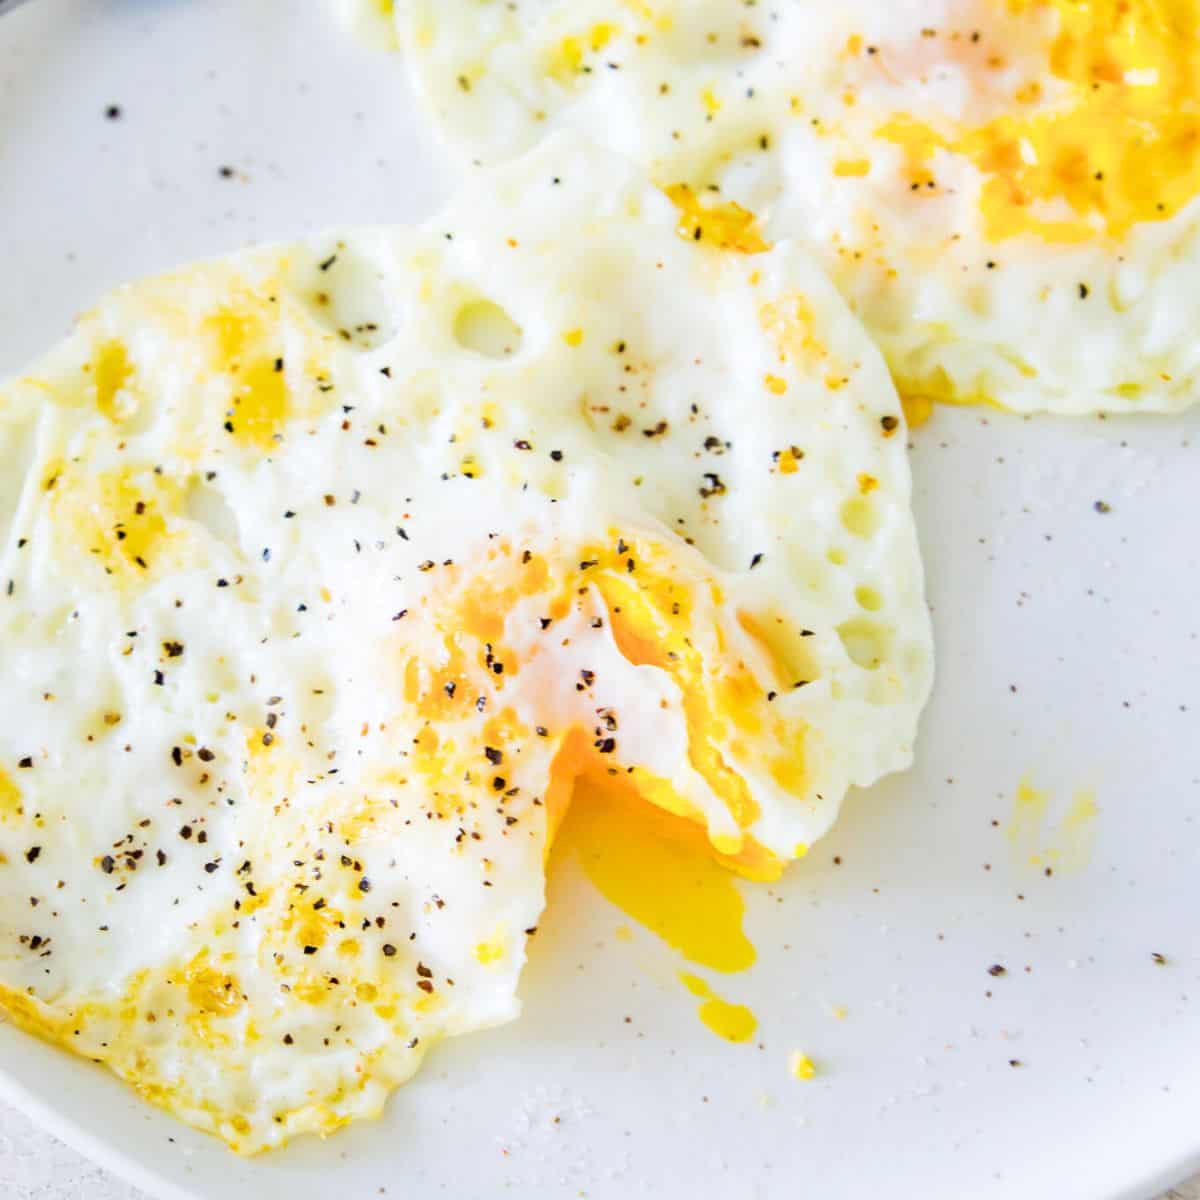 https://www.pureandsimplenourishment.com/wp-content/uploads/2023/05/over-medium-eggs-feature-image.jpg